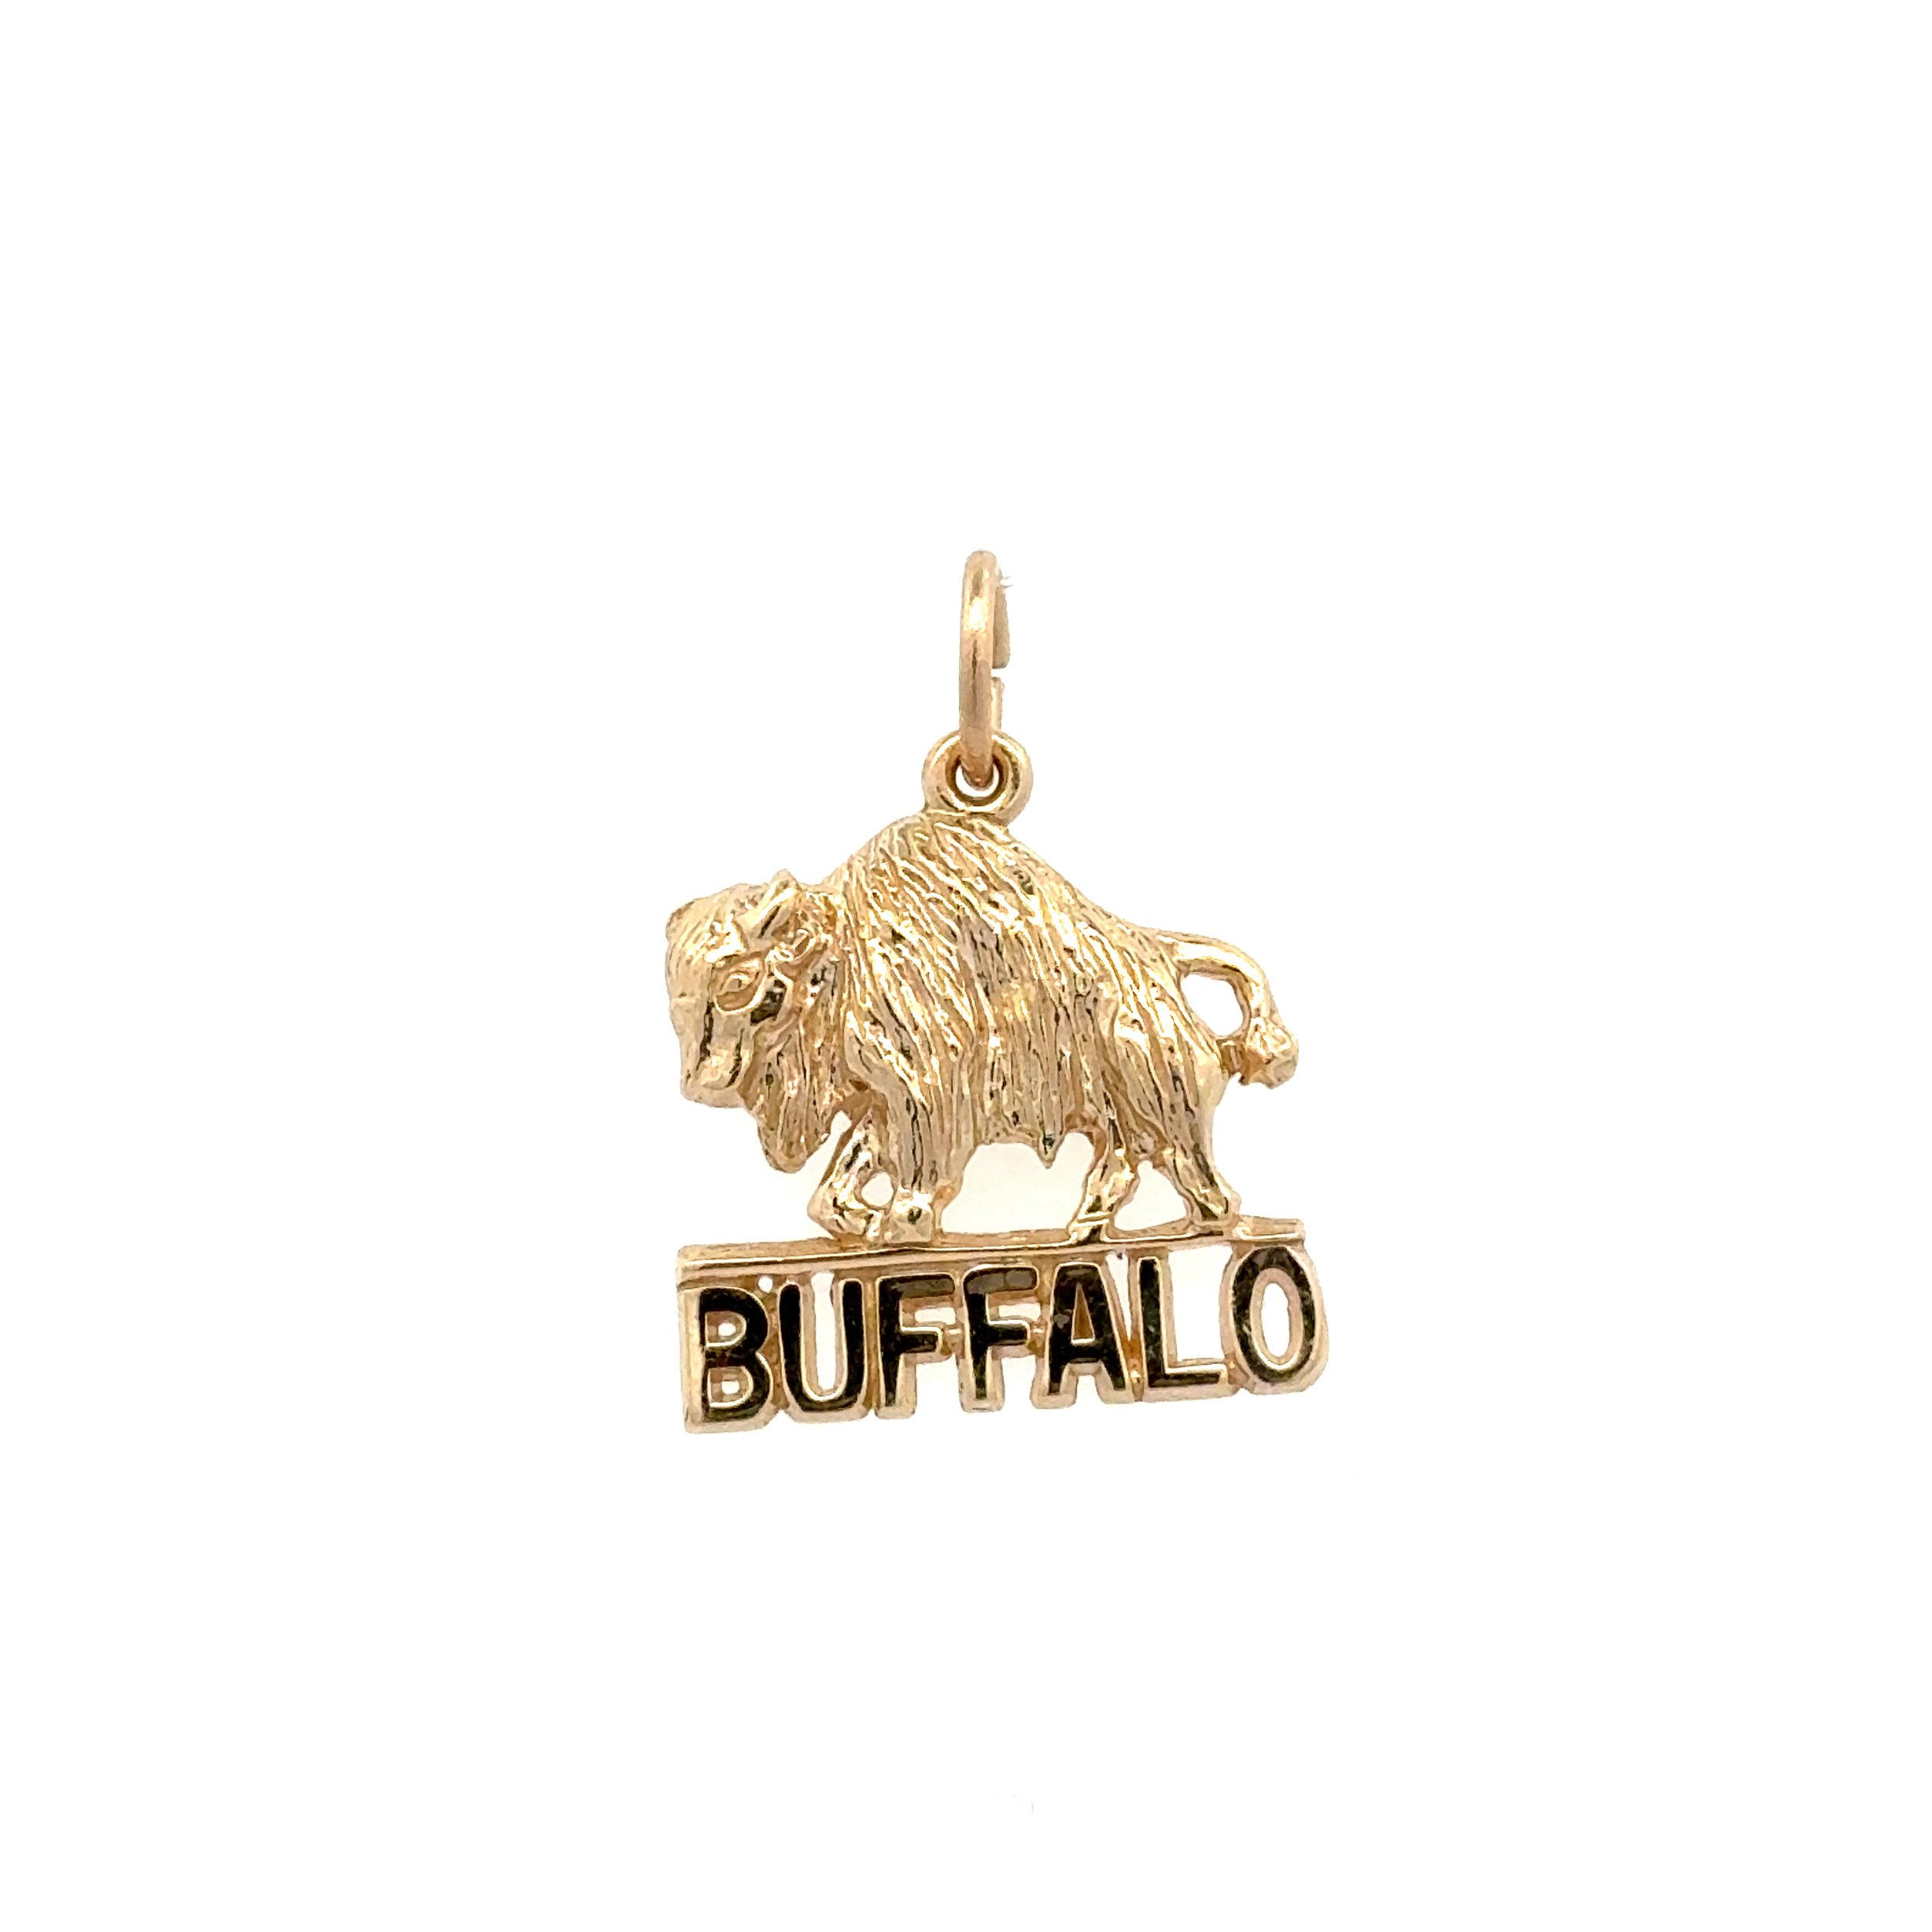 14K YG Buffalo BUFFALO Charm Pendant 2.5g, .8"